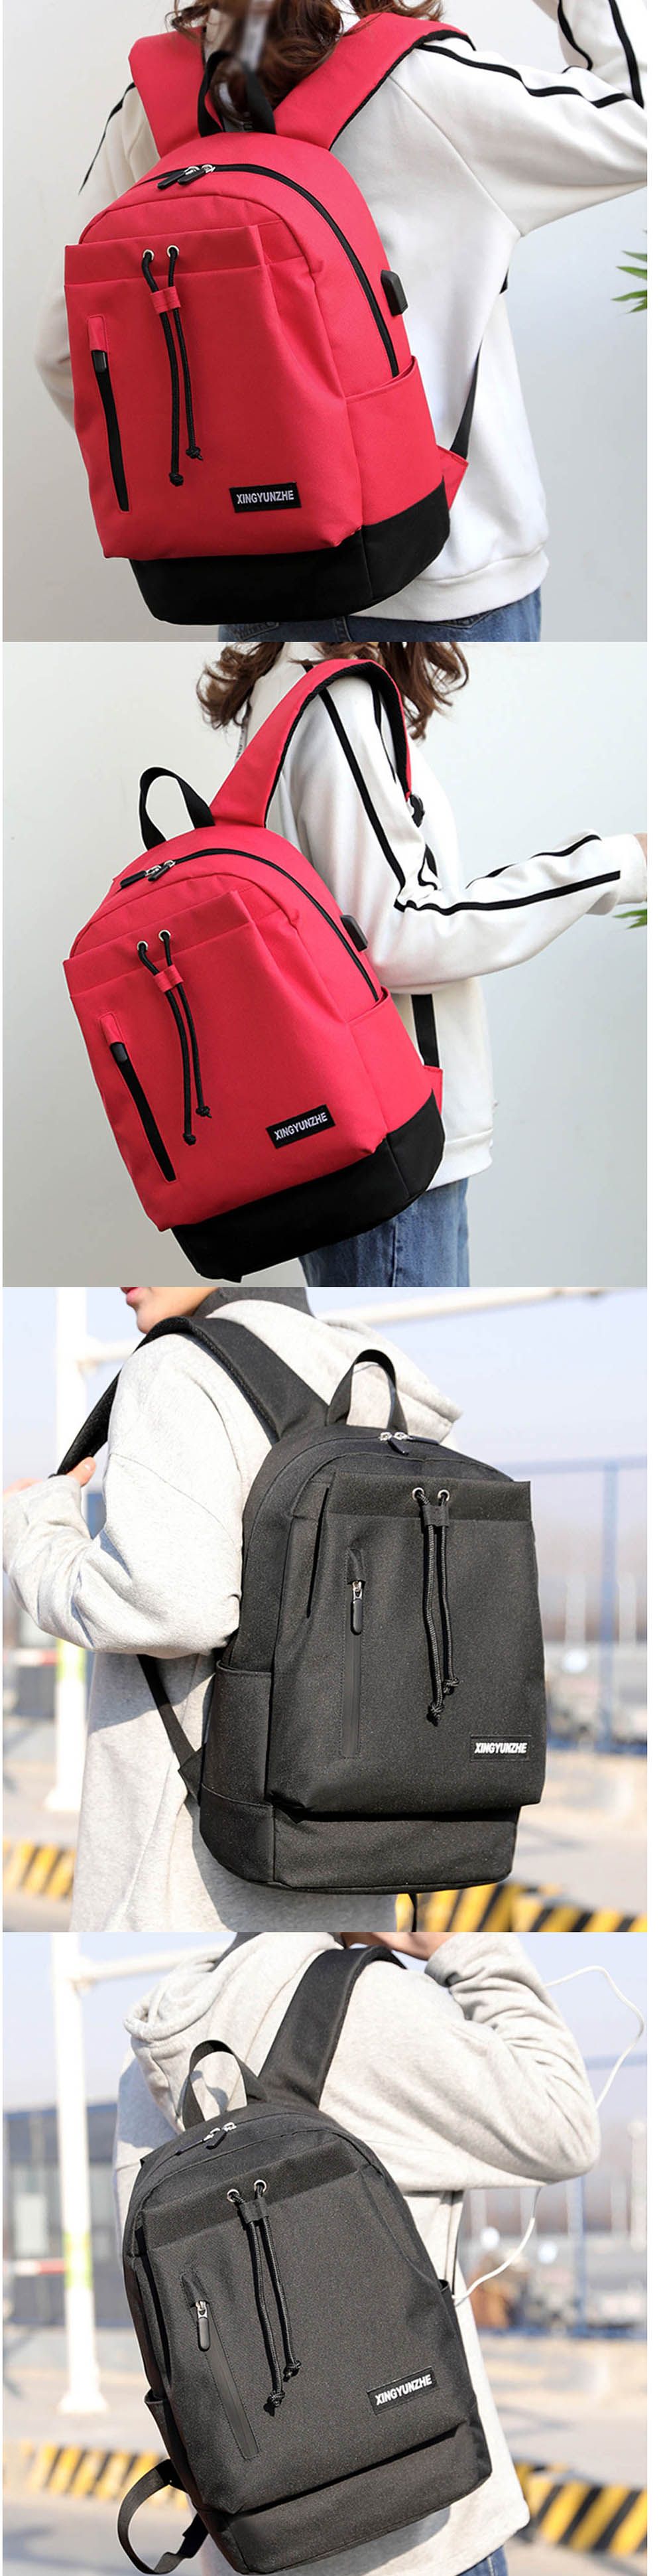 Oxford-Backpack-Laptop-Bag-with-USB-Charging-Port-Student-School-Bag-Fashion-Shoulder-Bag-for-156-in-1554758